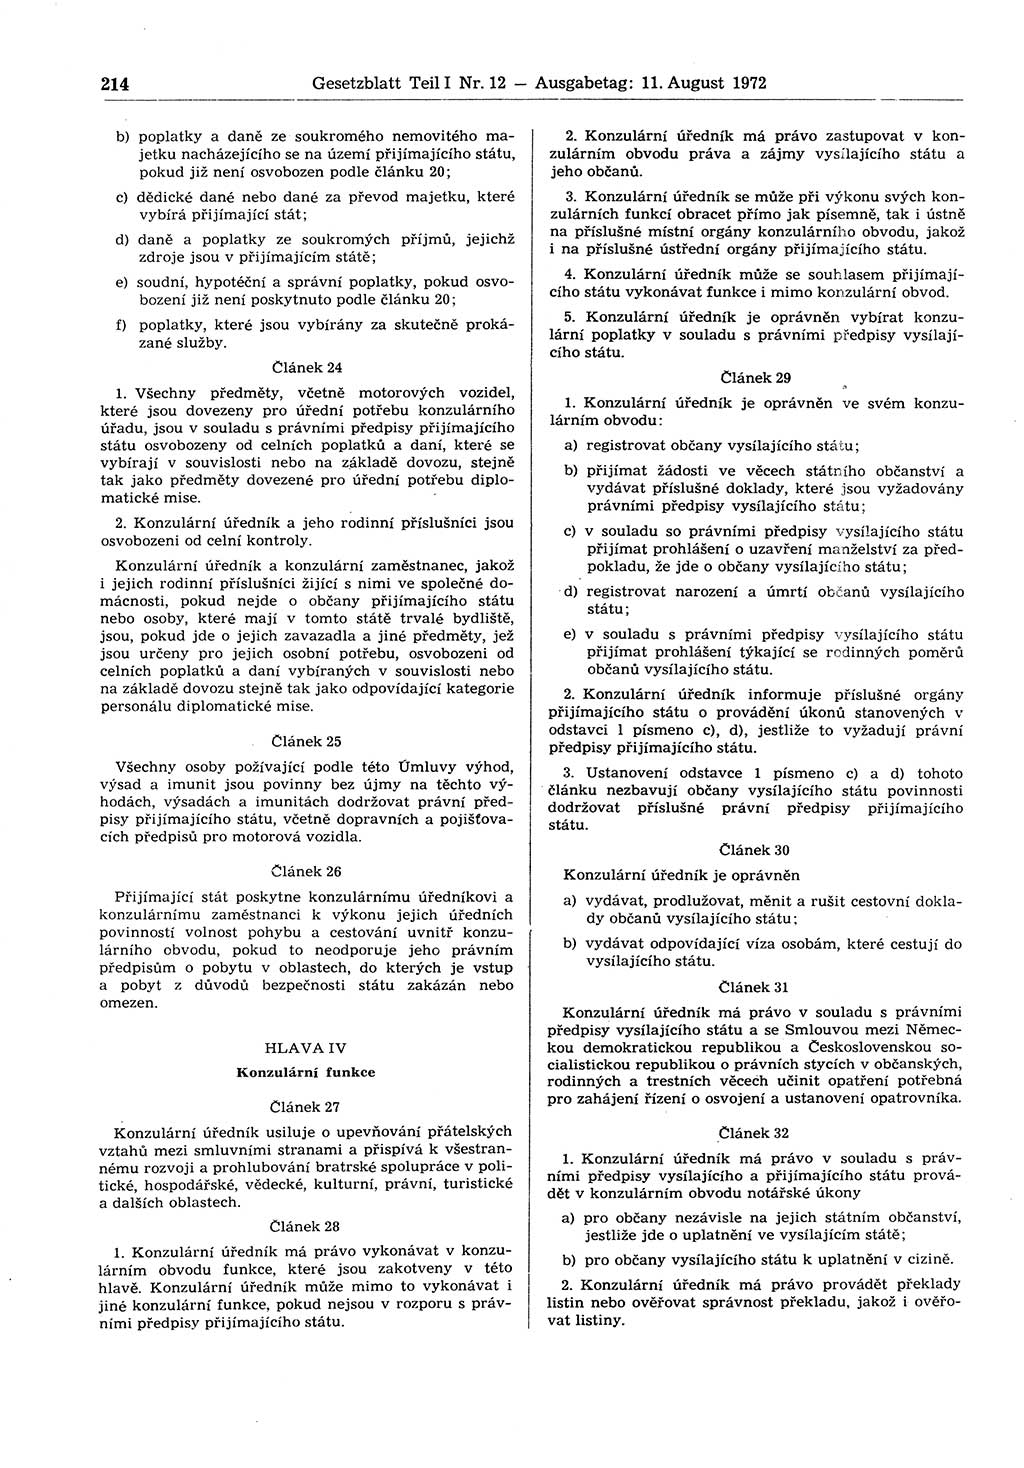 Gesetzblatt (GBl.) der Deutschen Demokratischen Republik (DDR) Teil Ⅰ 1972, Seite 214 (GBl. DDR Ⅰ 1972, S. 214)